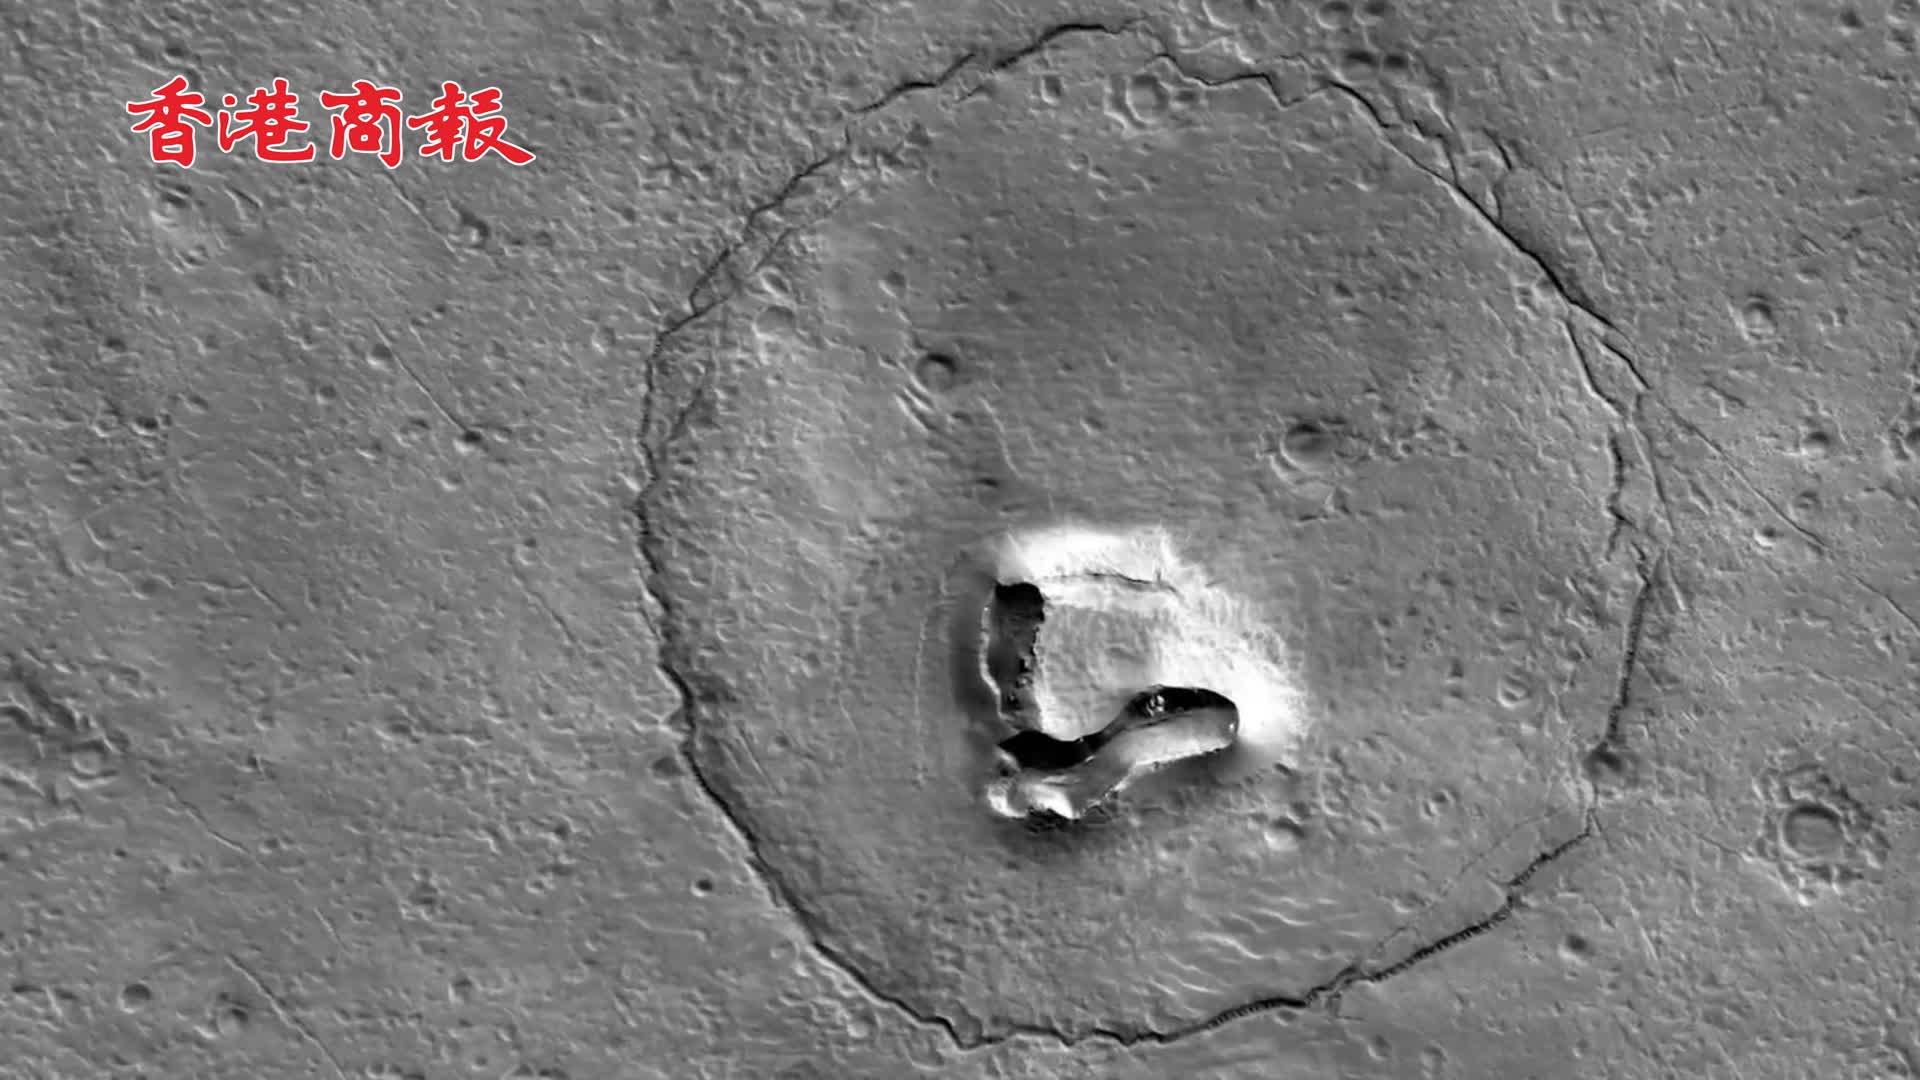 有片 | NASA公布火星表面照片 酷似「泰迪熊」臉